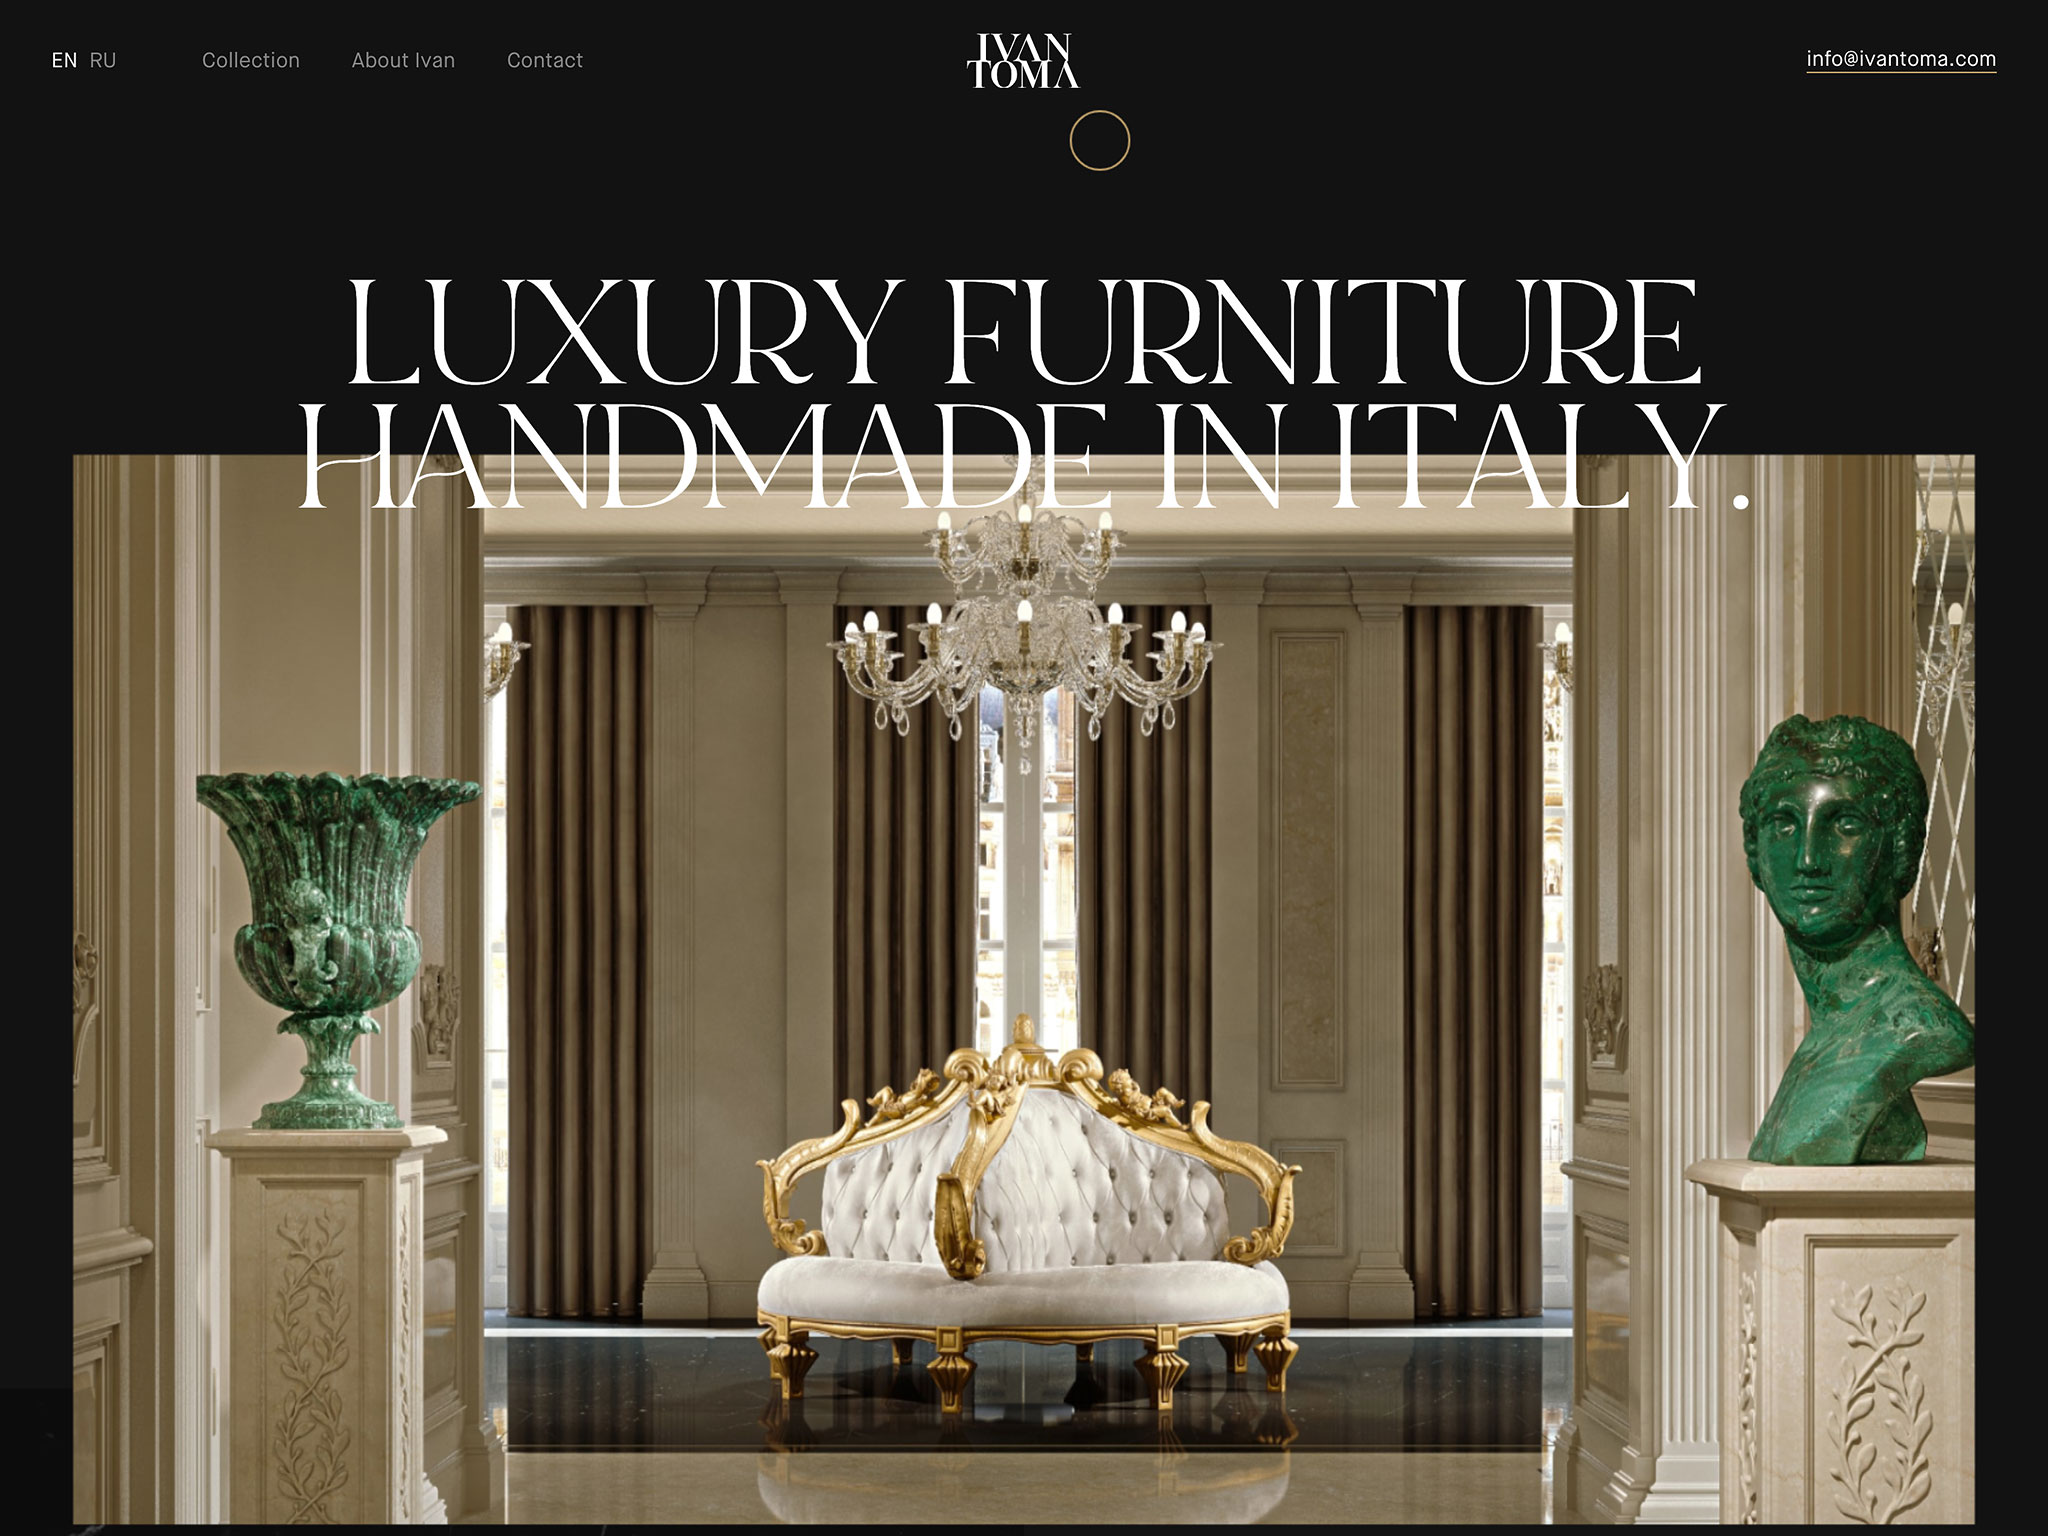 Ivan Toma – Exquisite Handmade Italian Furniture